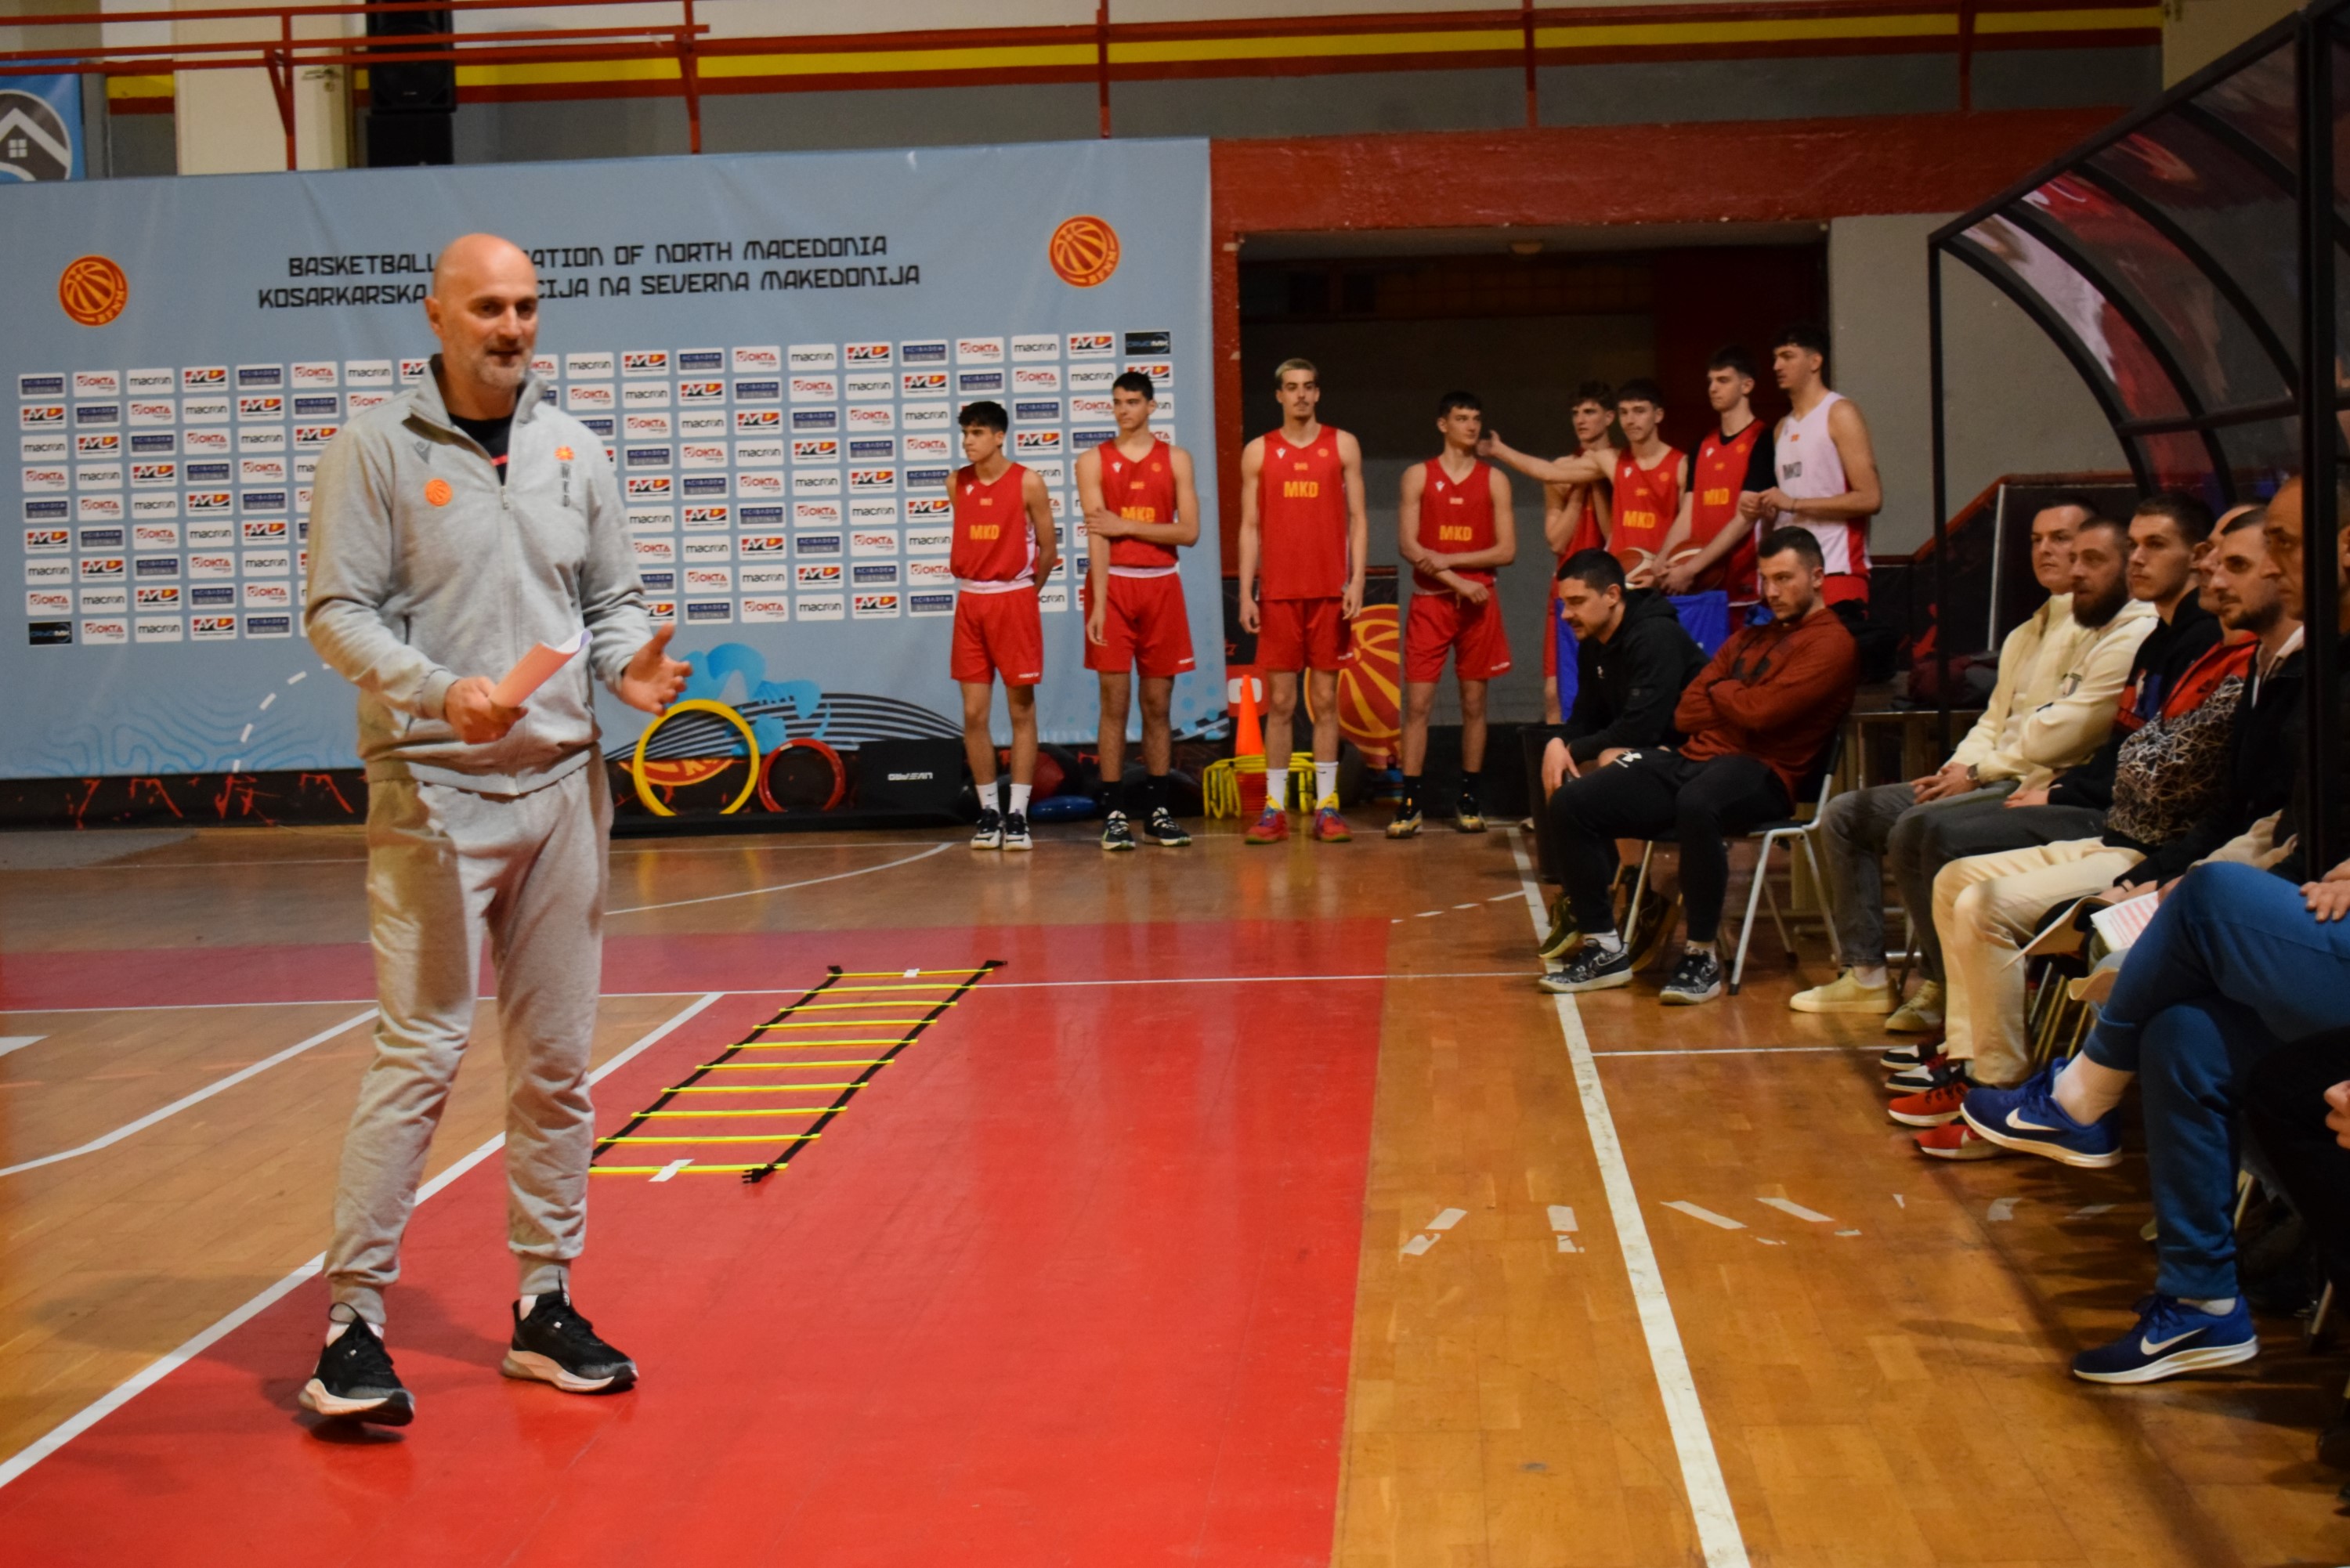 Професор Александар Кукриќ предаваше на темата „специфичности во развојот на младите кошаркари“